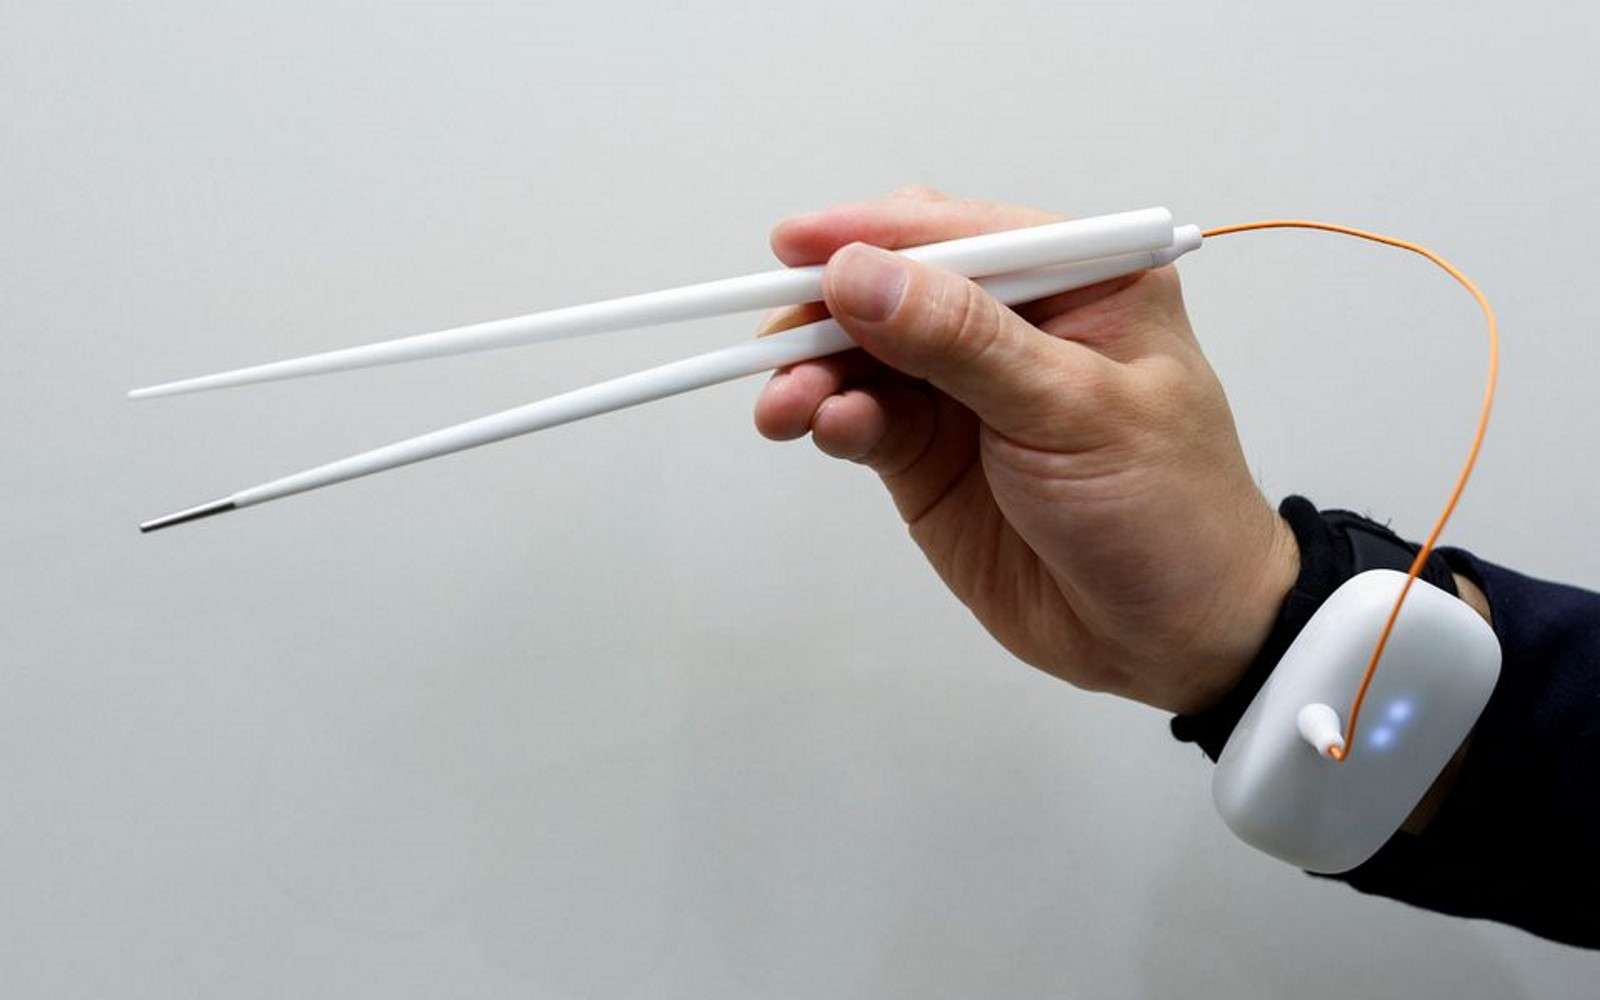 Ces baguettes délivrent une stimulation électrique pour augmenter le goût salé. © Université Meiji